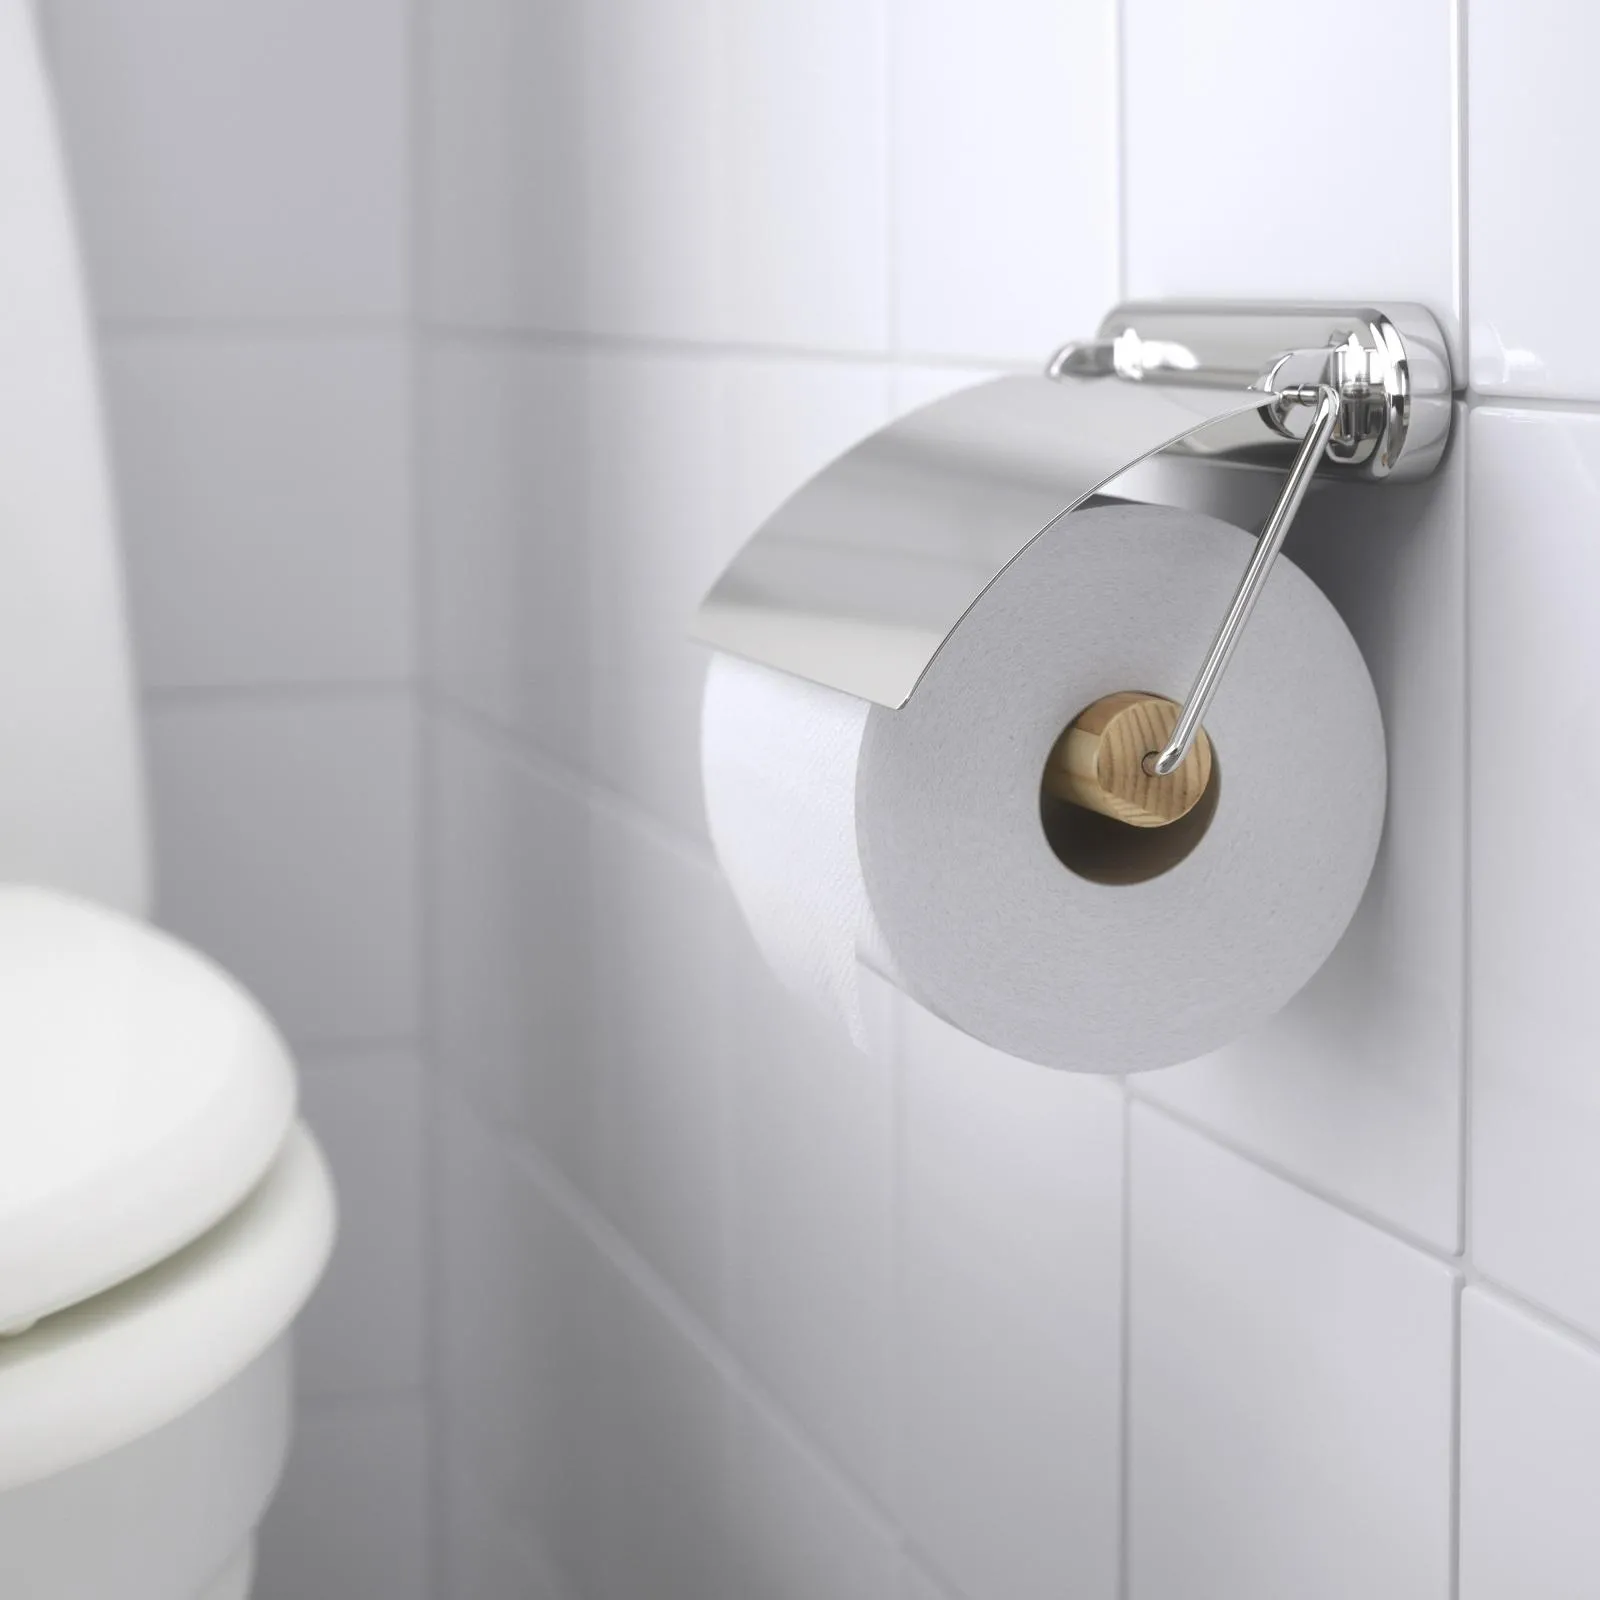 Porta rotolo carta igienica da muro/parete in acciaio inox bagno